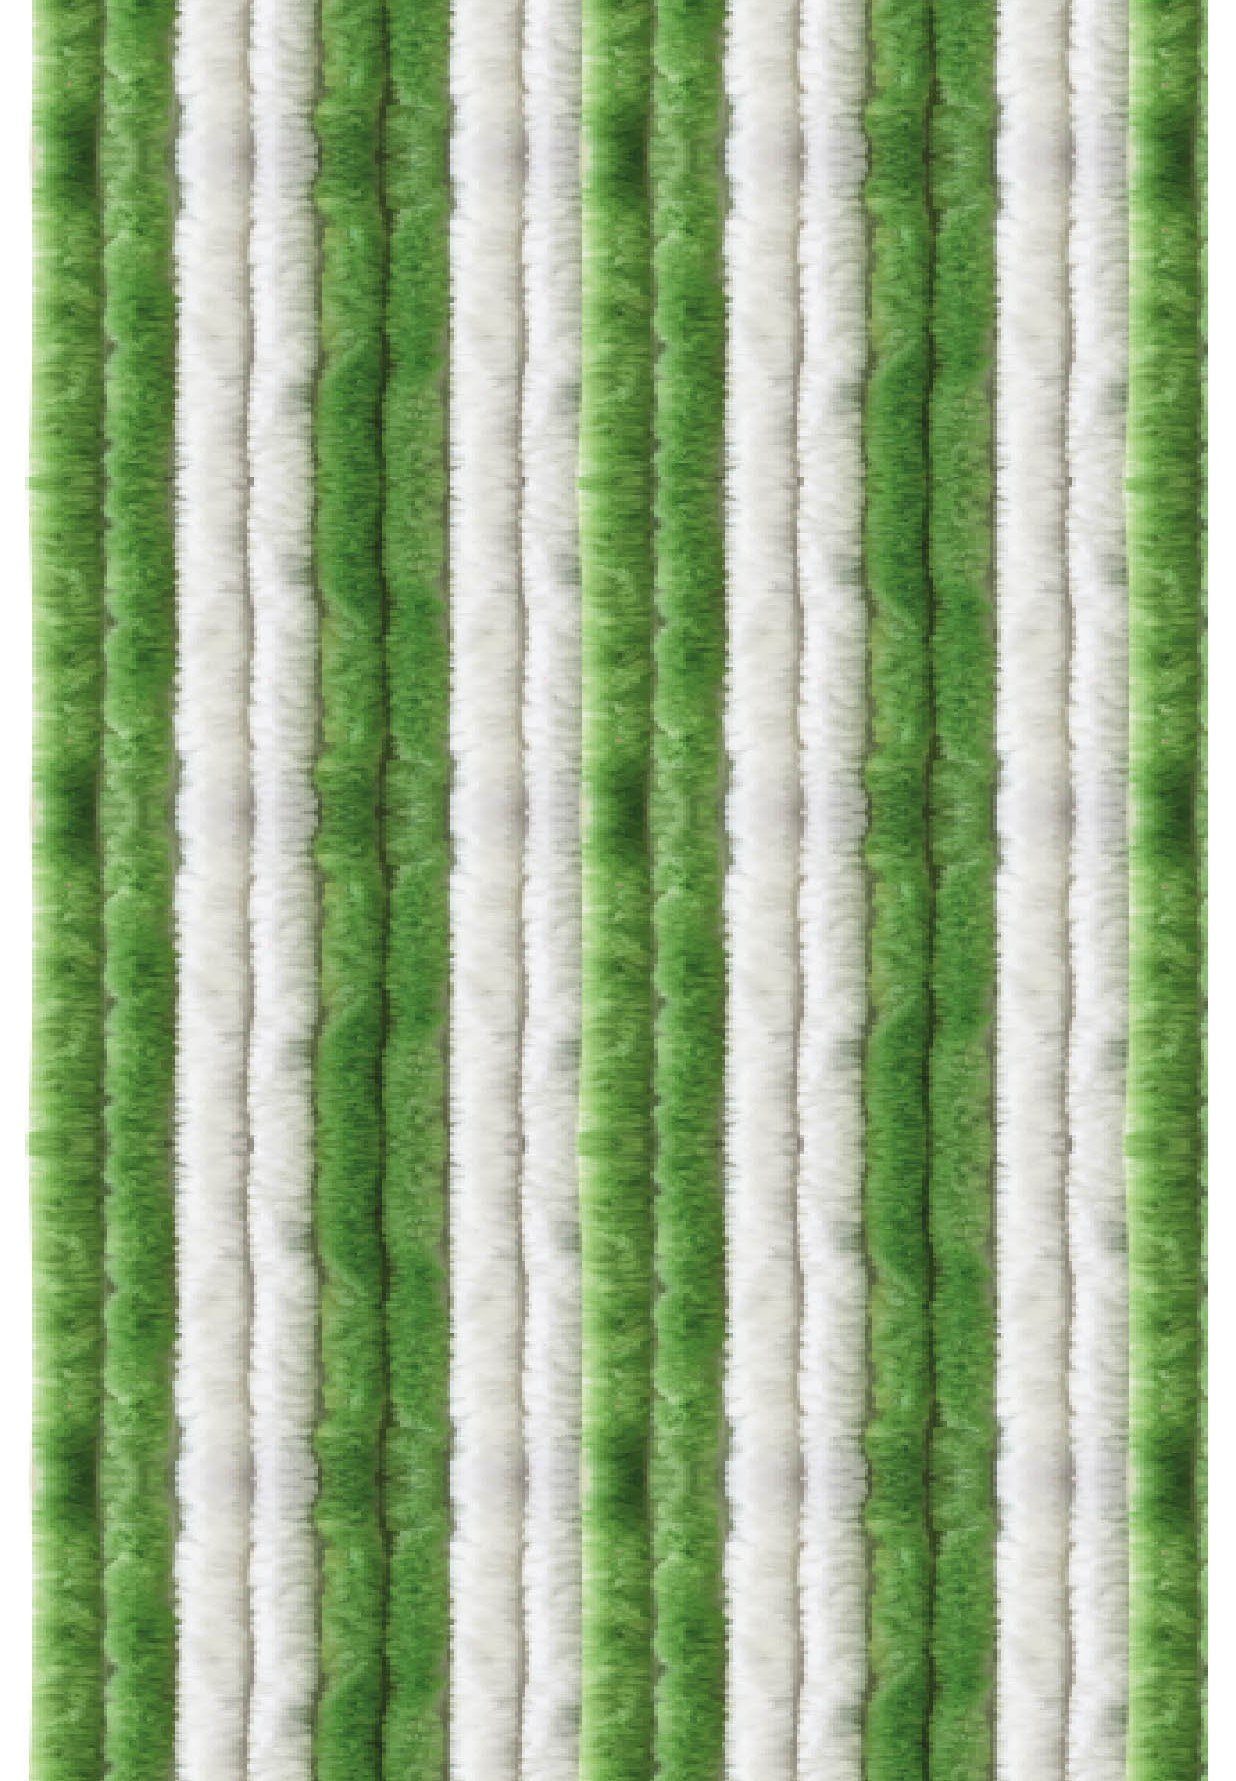 Türvorhang Flauschi, Arsvita, Ösen (1 St), blickdicht, Flauschvorhang in 80cm Breite, perfekter Insekten- und Sichtschutz, viele versch. Farben verfügbar Grün - Weiß